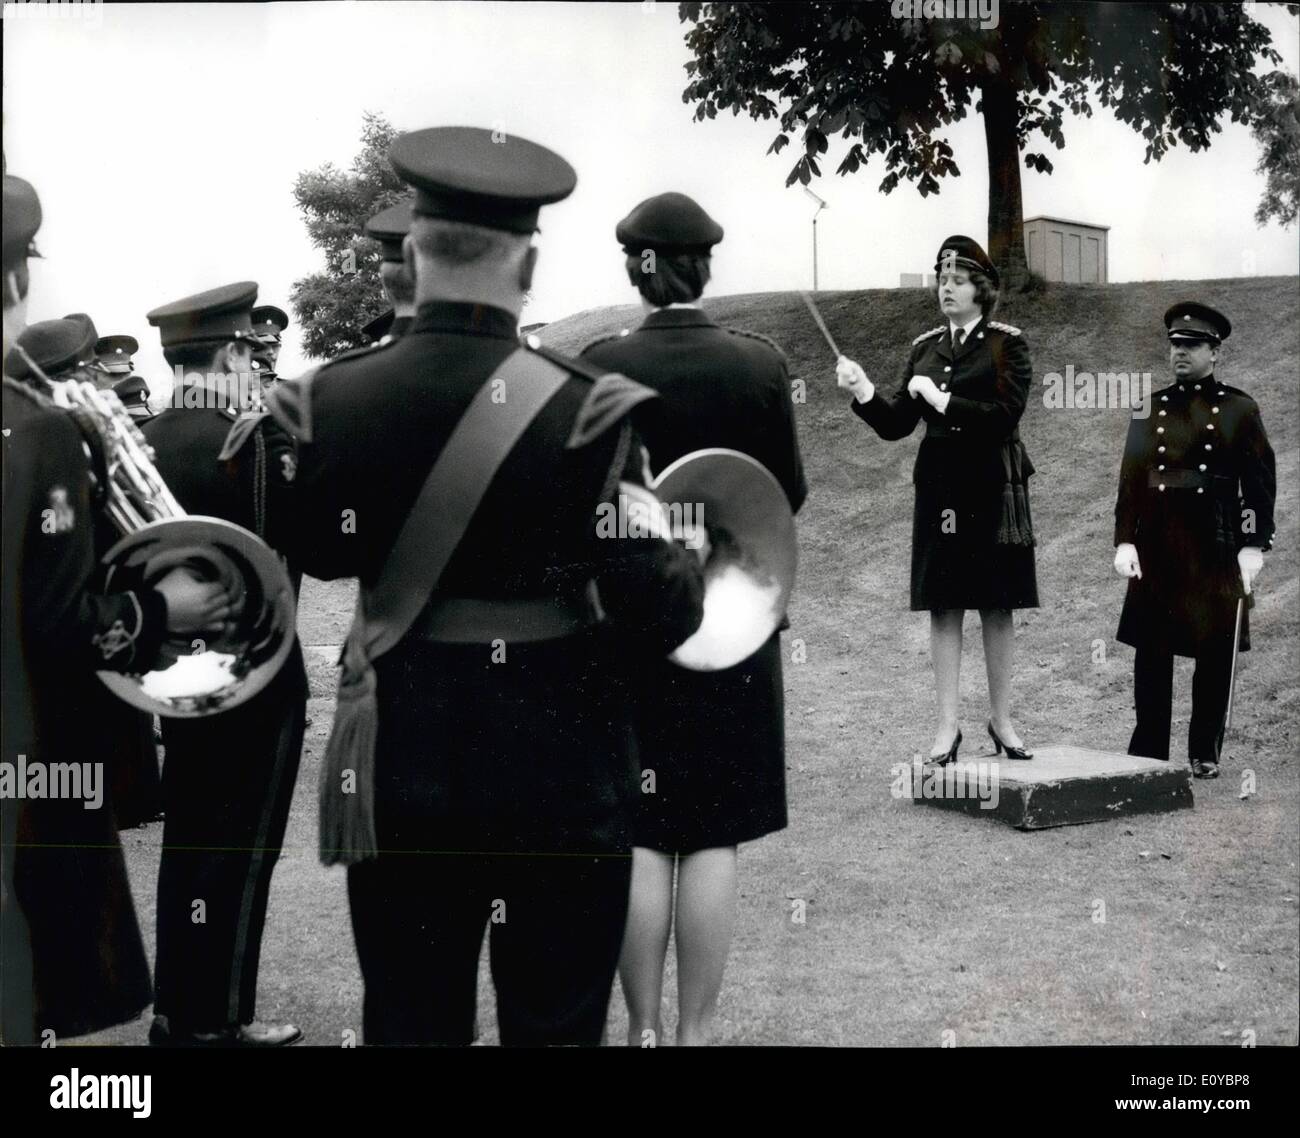 Agosto 08, 1969 - el marido y la mujer unen sus fuerzas en la tribuna: Dos bandas y dos conductores proporcionando un matrimonio armonioso en el patio de armas en el cuartel W.R.A.C. en Stoughton, cerca de Guildford, Surrey, ayer. Capt Zara Bowness-Smith, 26, realizó una ensayos para un concierto en Guildford anoche, dada por la combinación de bandas de la W.R.A.C., de la que es director de música, y los 3mn. El Royal Anglian Regt., cuyo bandmaster, Sr. Robert Bowness-Smith, estaba por tomar el relevo Foto de stock